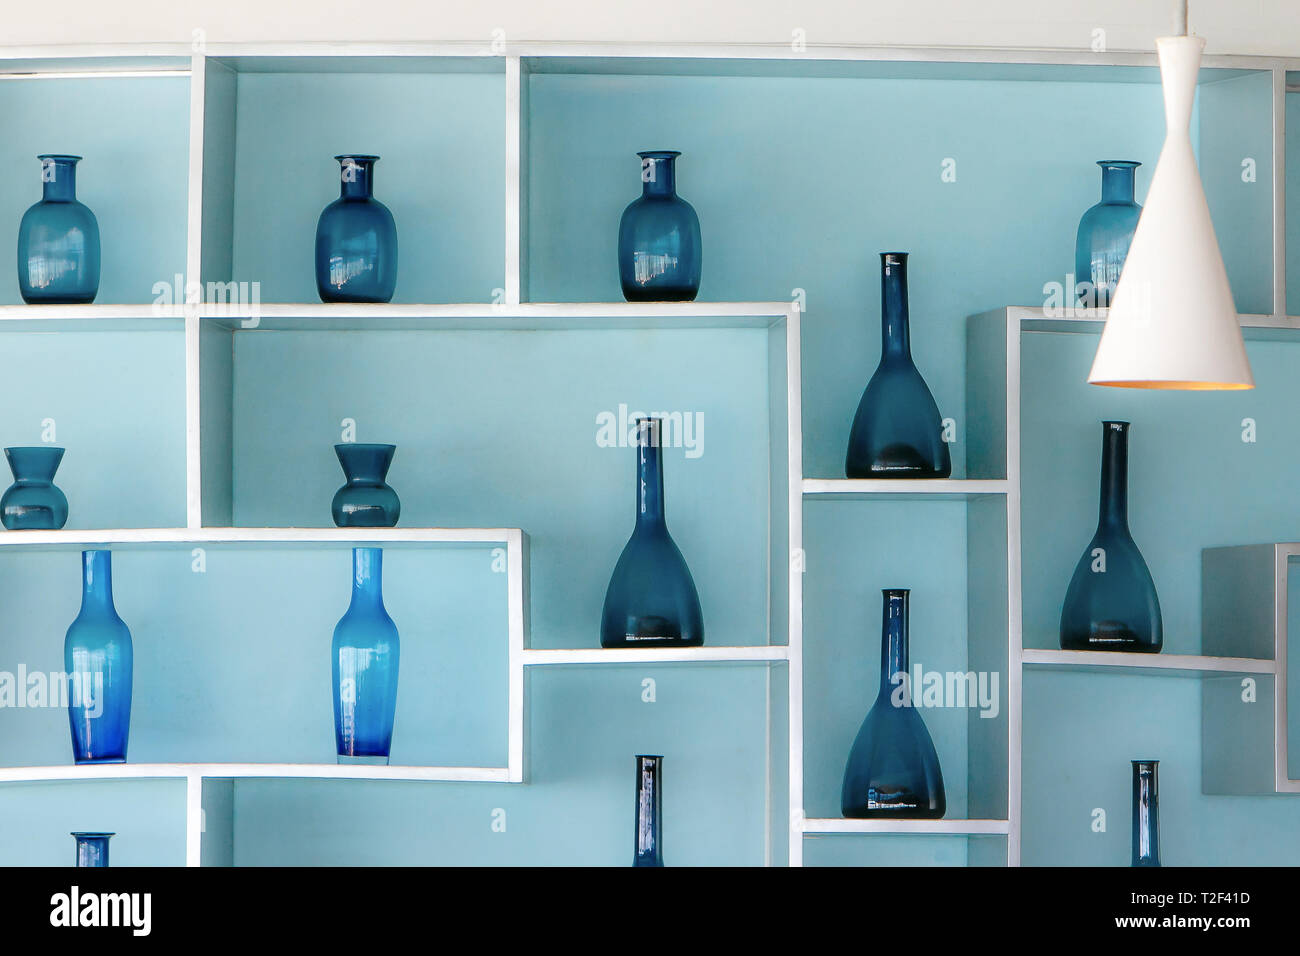 Retro Style Blau Glas Flaschen in einer schönen Anordnung in den Regalen zu einem hellblauen Wand befestigt. Stockfoto